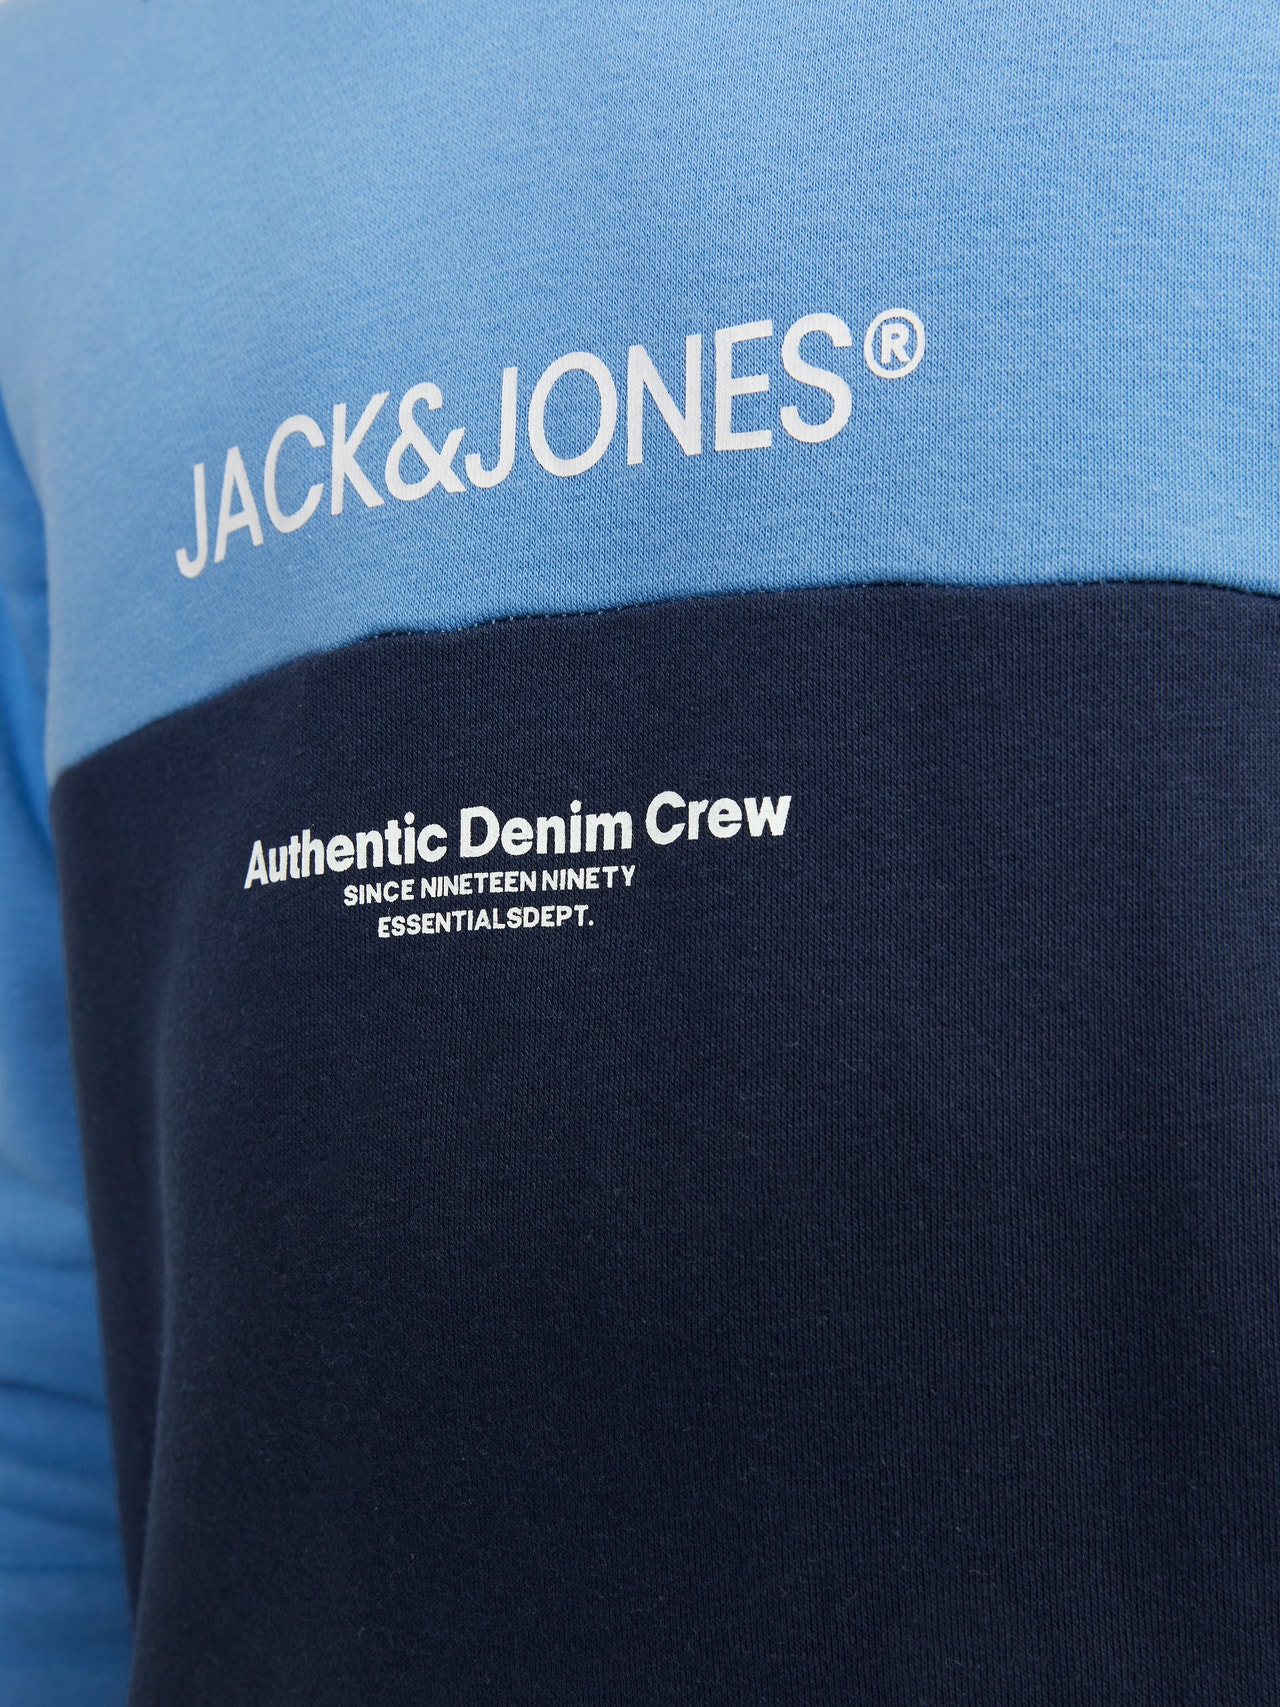 Jack & Jones W bloki kolorystyczne Bluza z kapturem Dla chłopców -Pacific Coast - 12251086